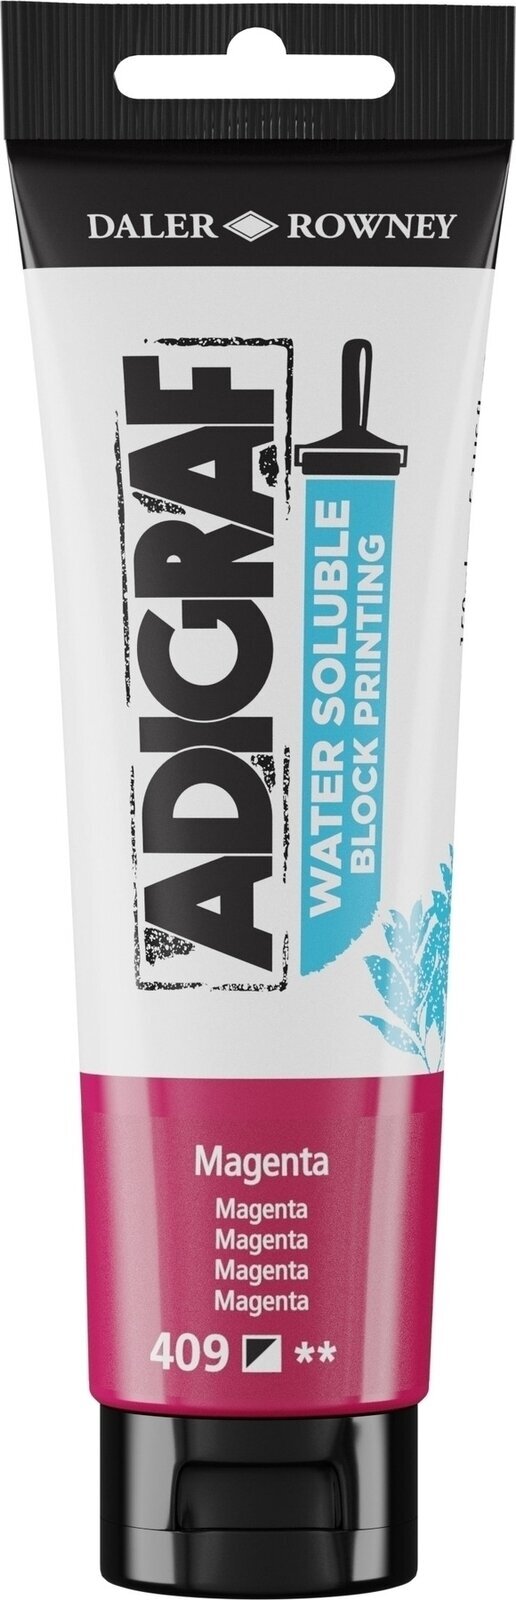 Χρώμα για λινογραφία Daler Rowney Adigraf Block Printing Water Soluble Colour Χρώμα για λινογραφία Magenta 150 ml